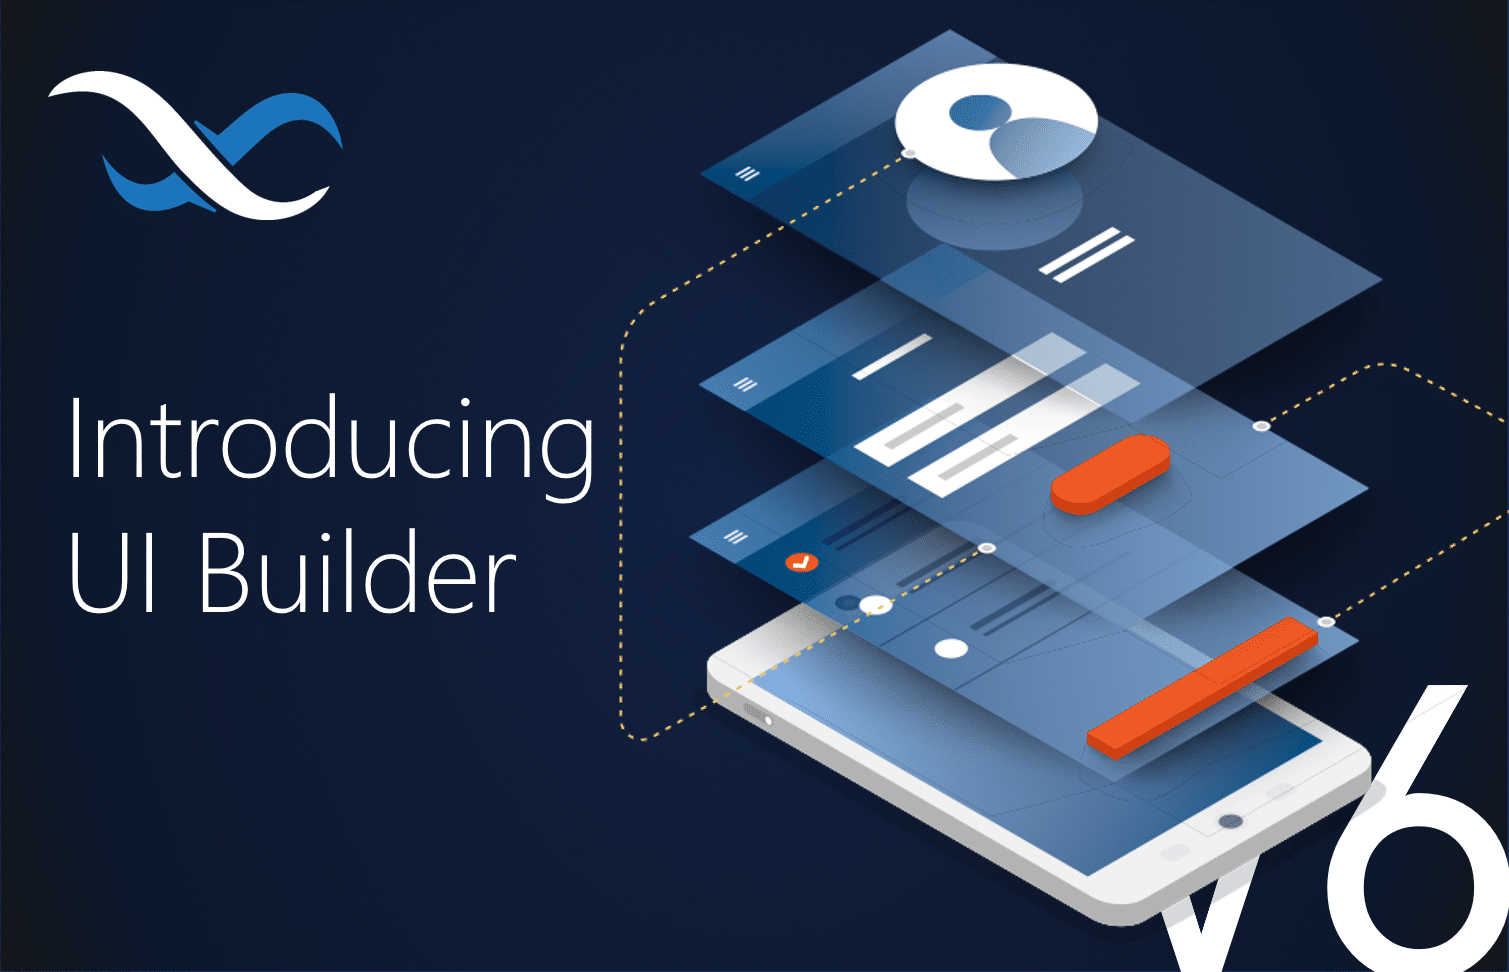 ios app builder